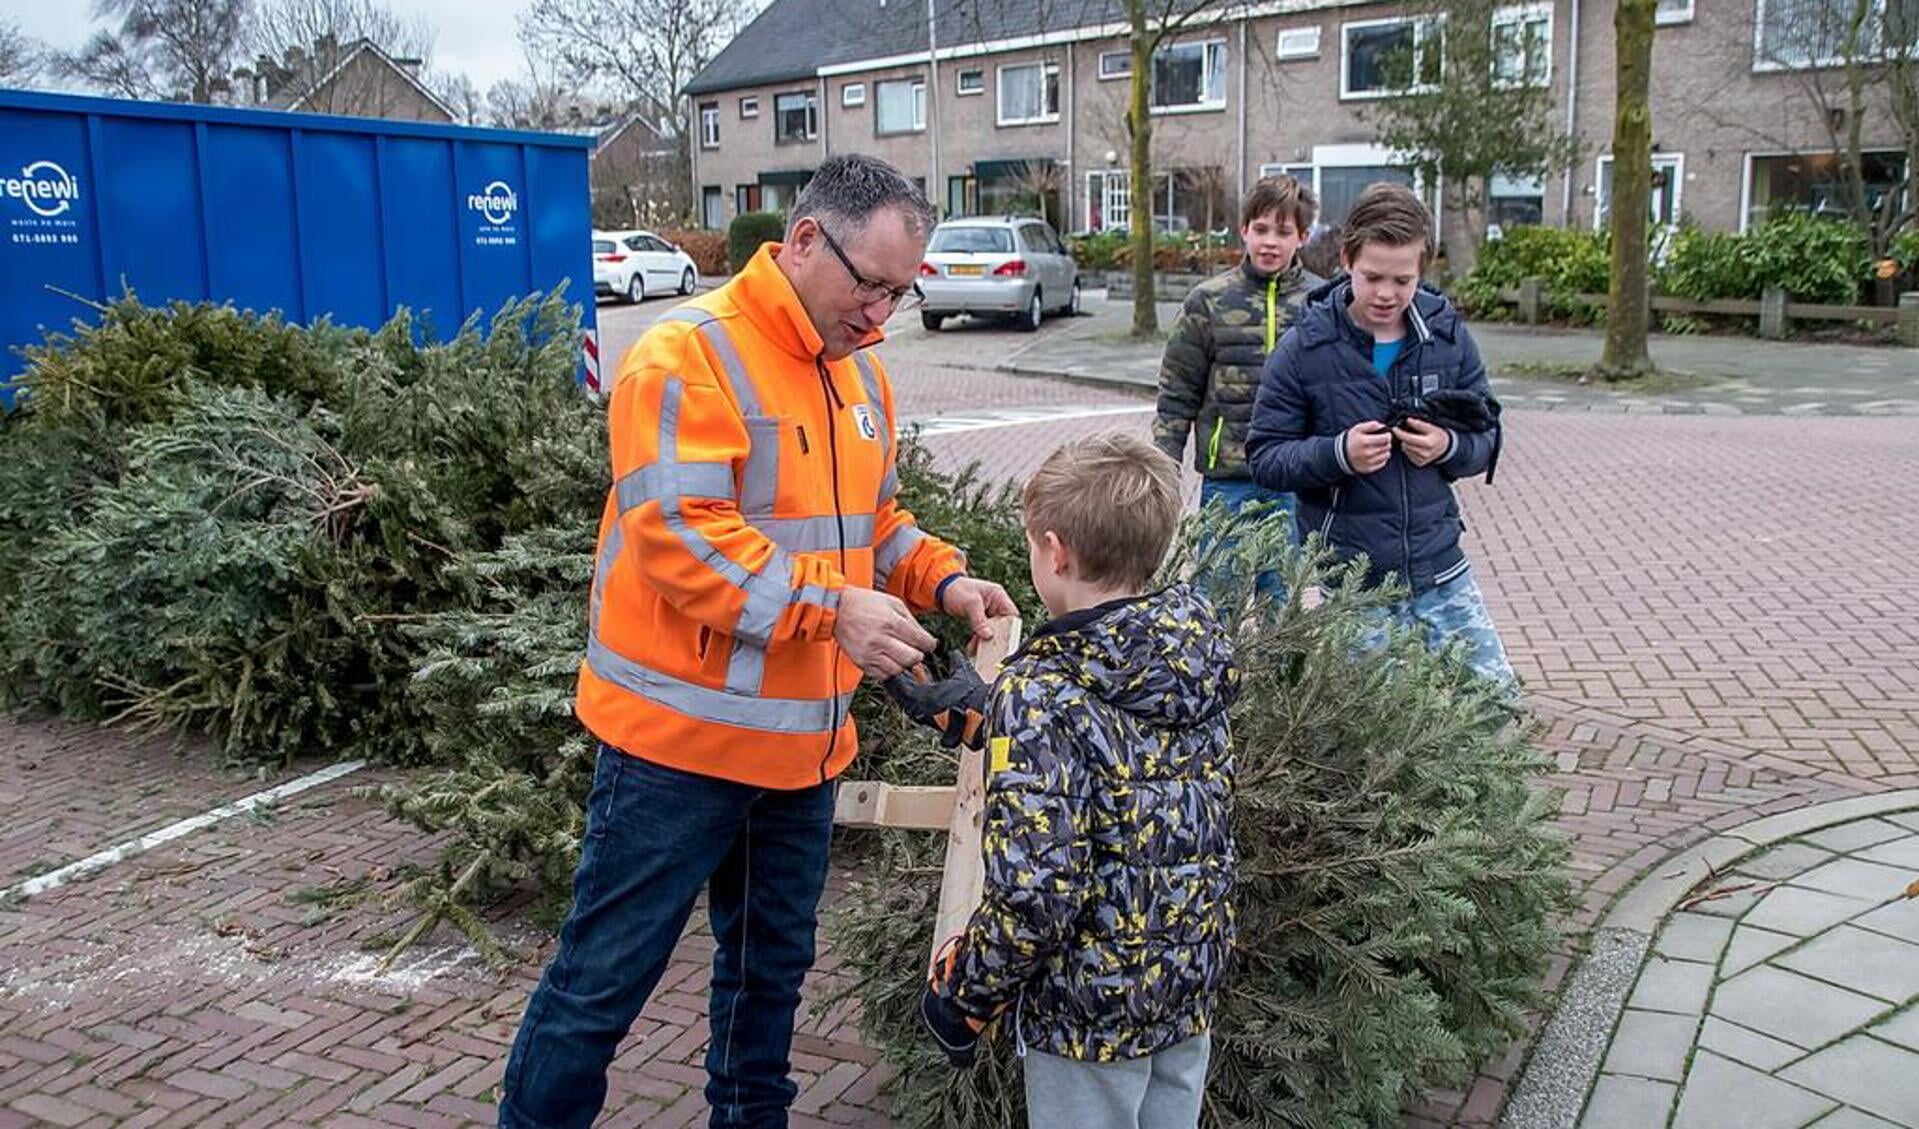 Een jongen krijgt uitbetaald voor de ingeleverde kerstbomen. 